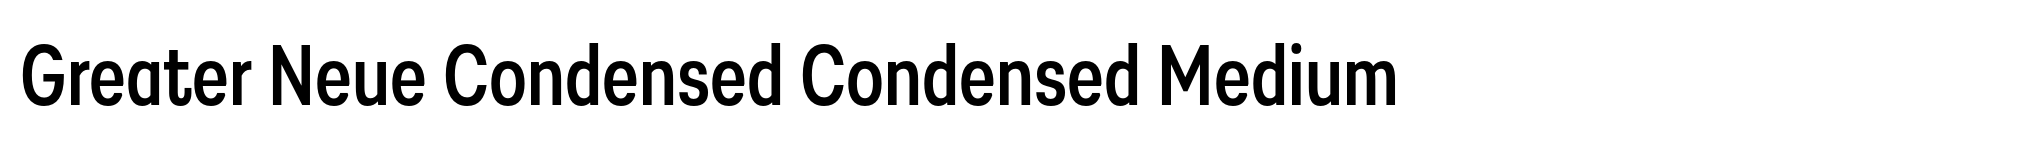 Greater Neue Condensed Condensed Medium image